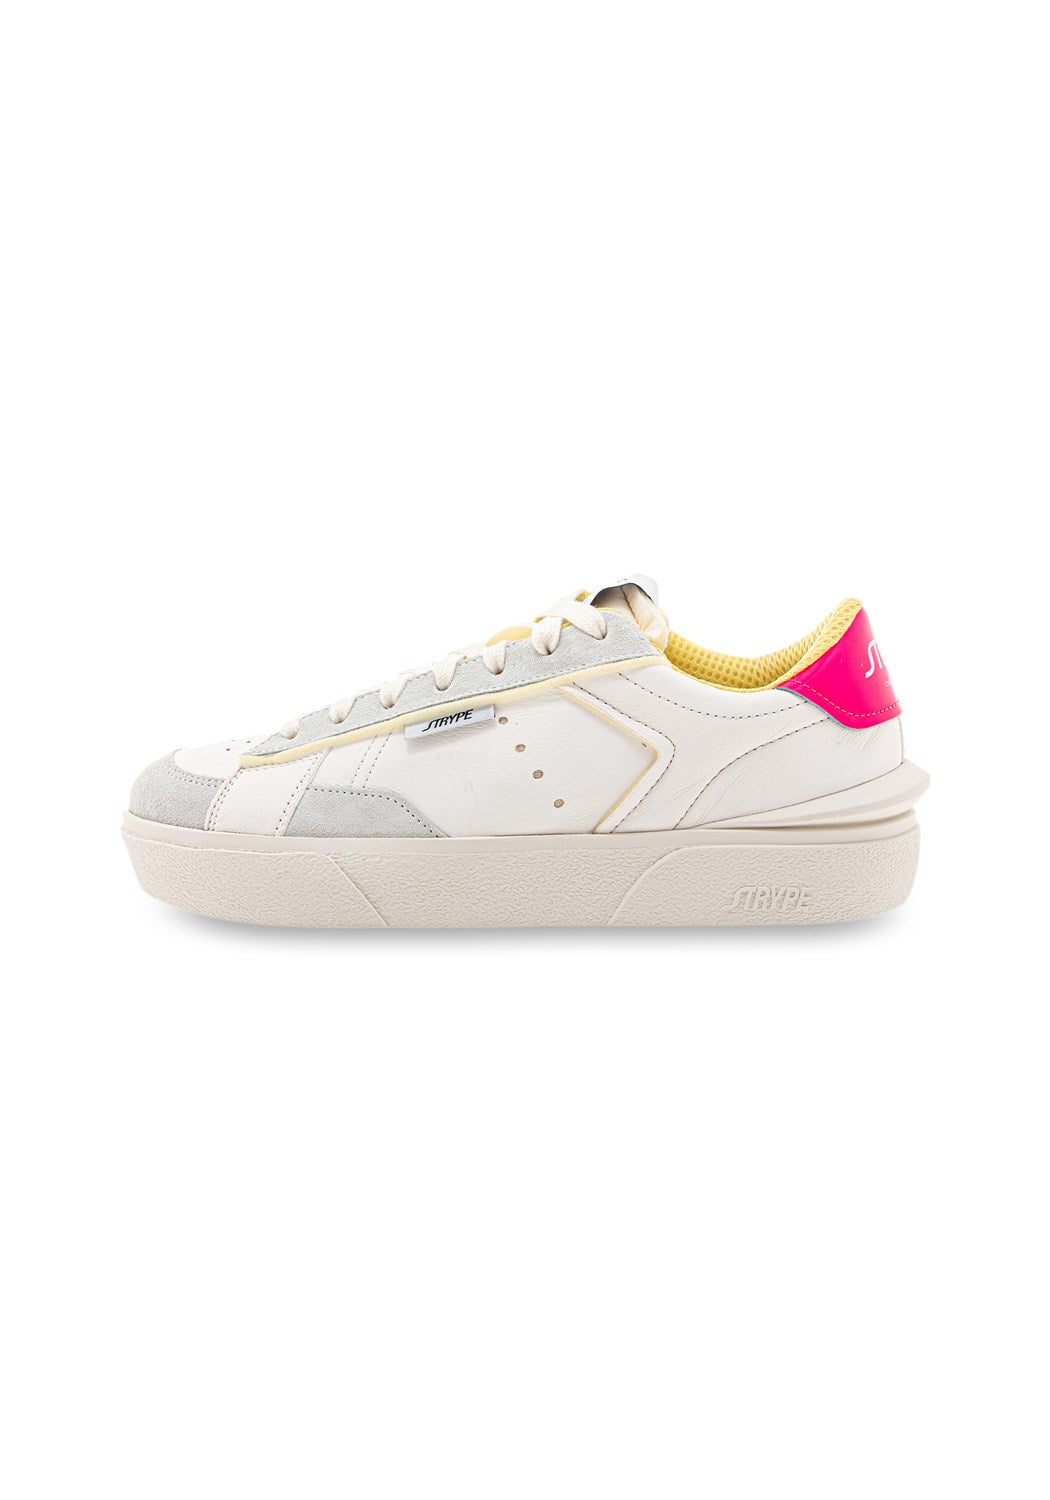 ST015-FX Sneaker Organic white/pink | Bildmaterial bereitgestellt von SHOES.PLEASE.